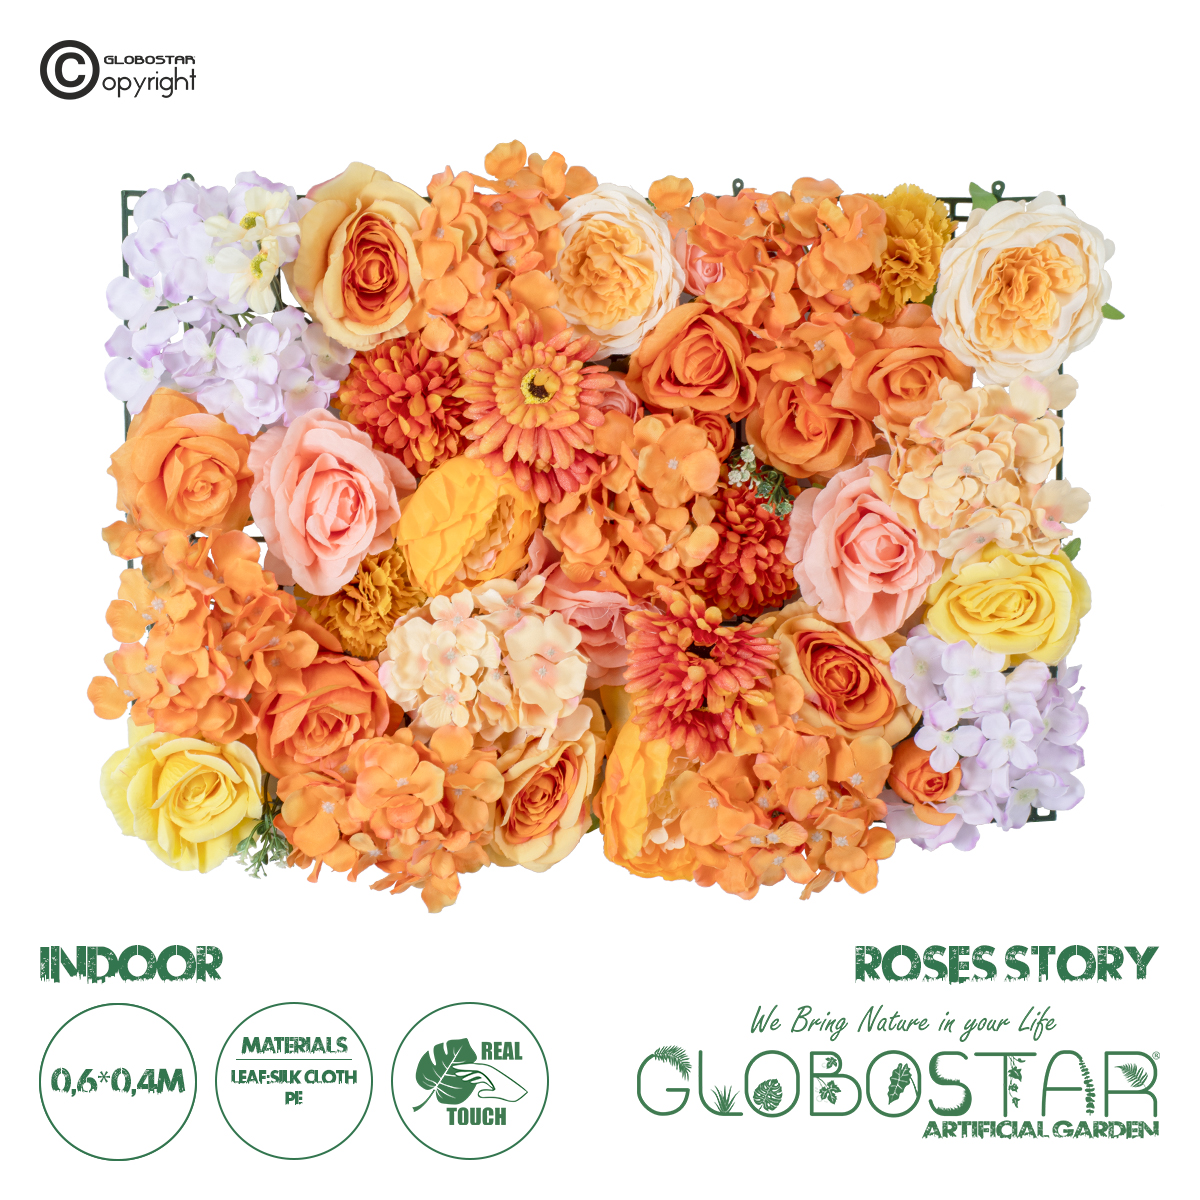 GloboStar® Artificial Garden ROSES STORY 20354 Τεχνητό Διακοσμητικό Πάνελ Λουλουδιών – Κάθετος Κήπος σύνθεση Πορτοκαλί & Ροζ Τριαντάφυλλα Μ40 x Π60 x Υ12cm